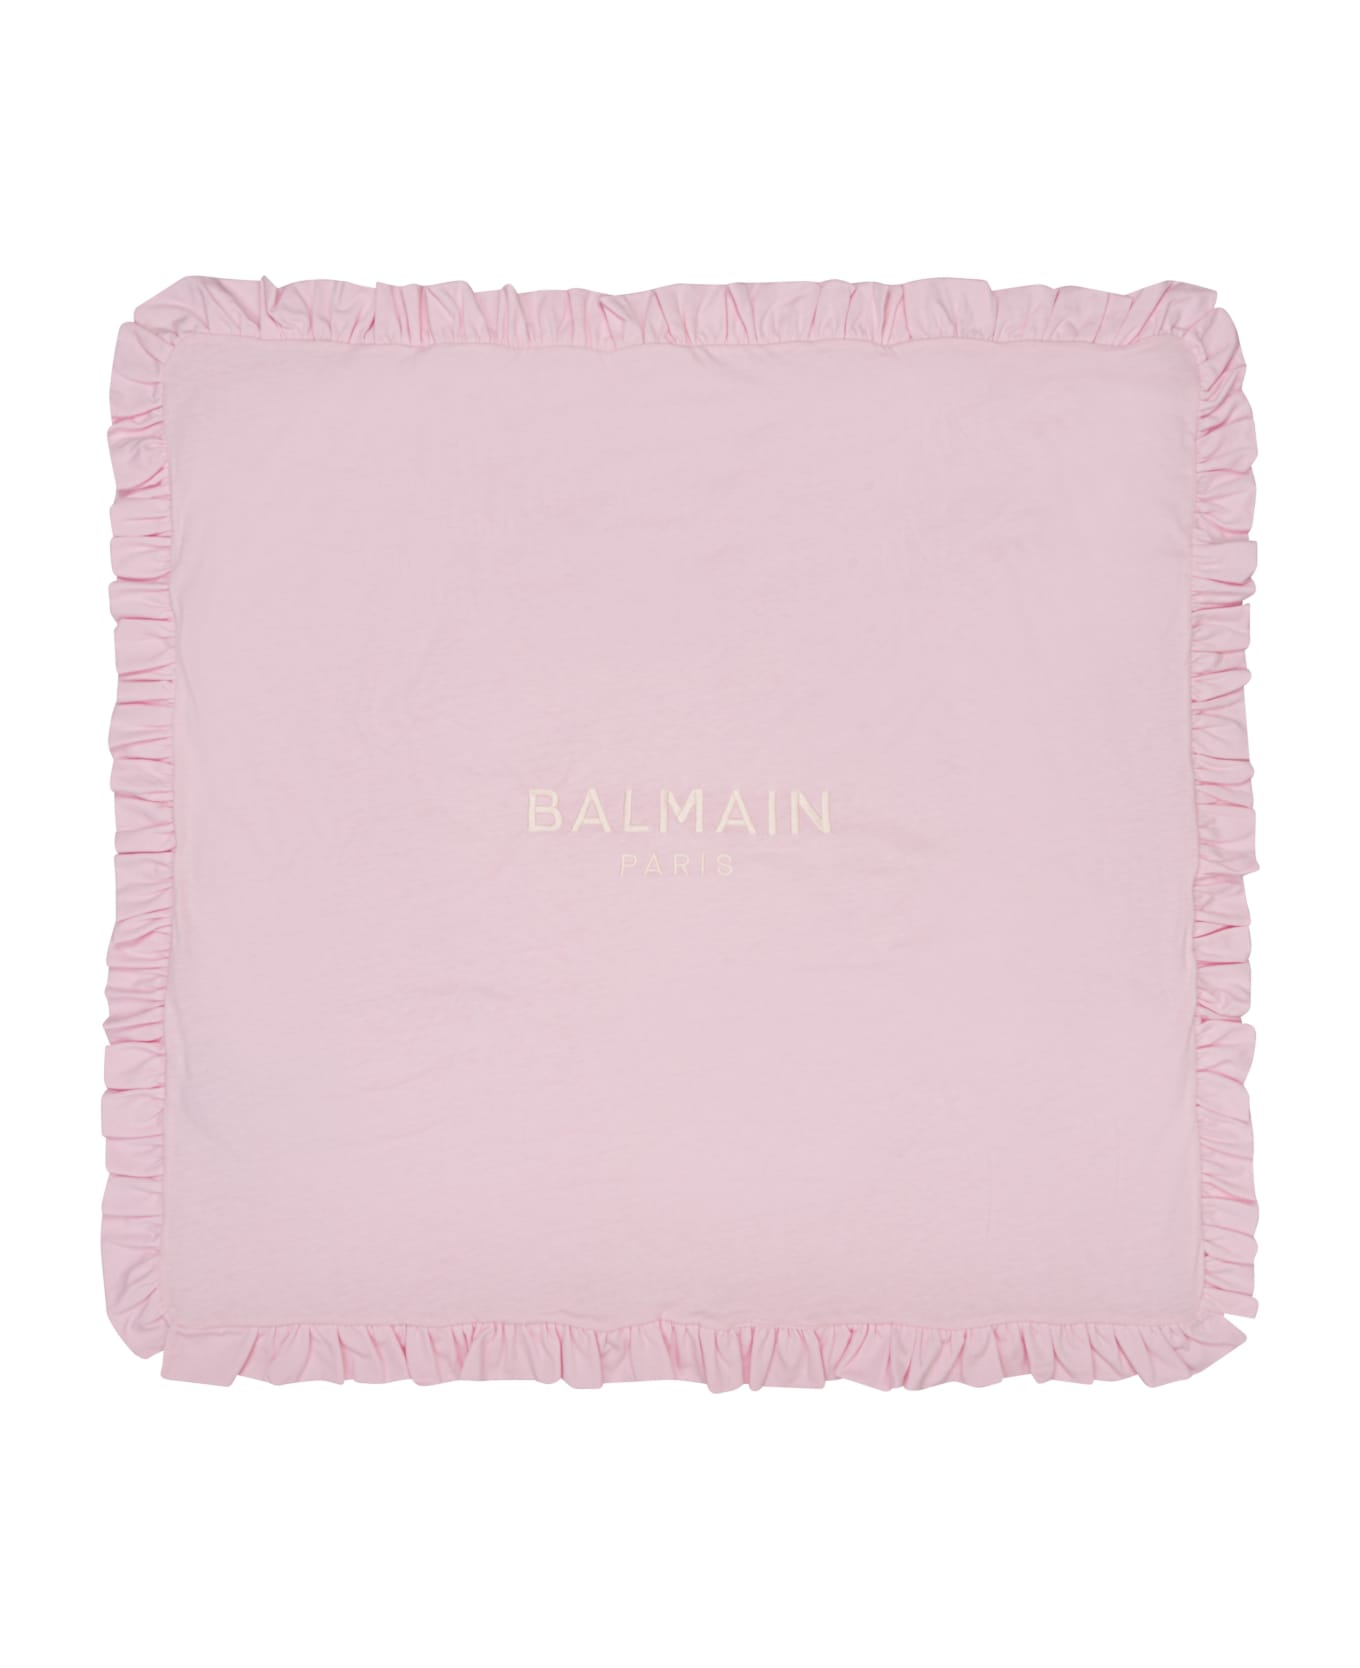 Balmain Coperta Con Logo - Pink